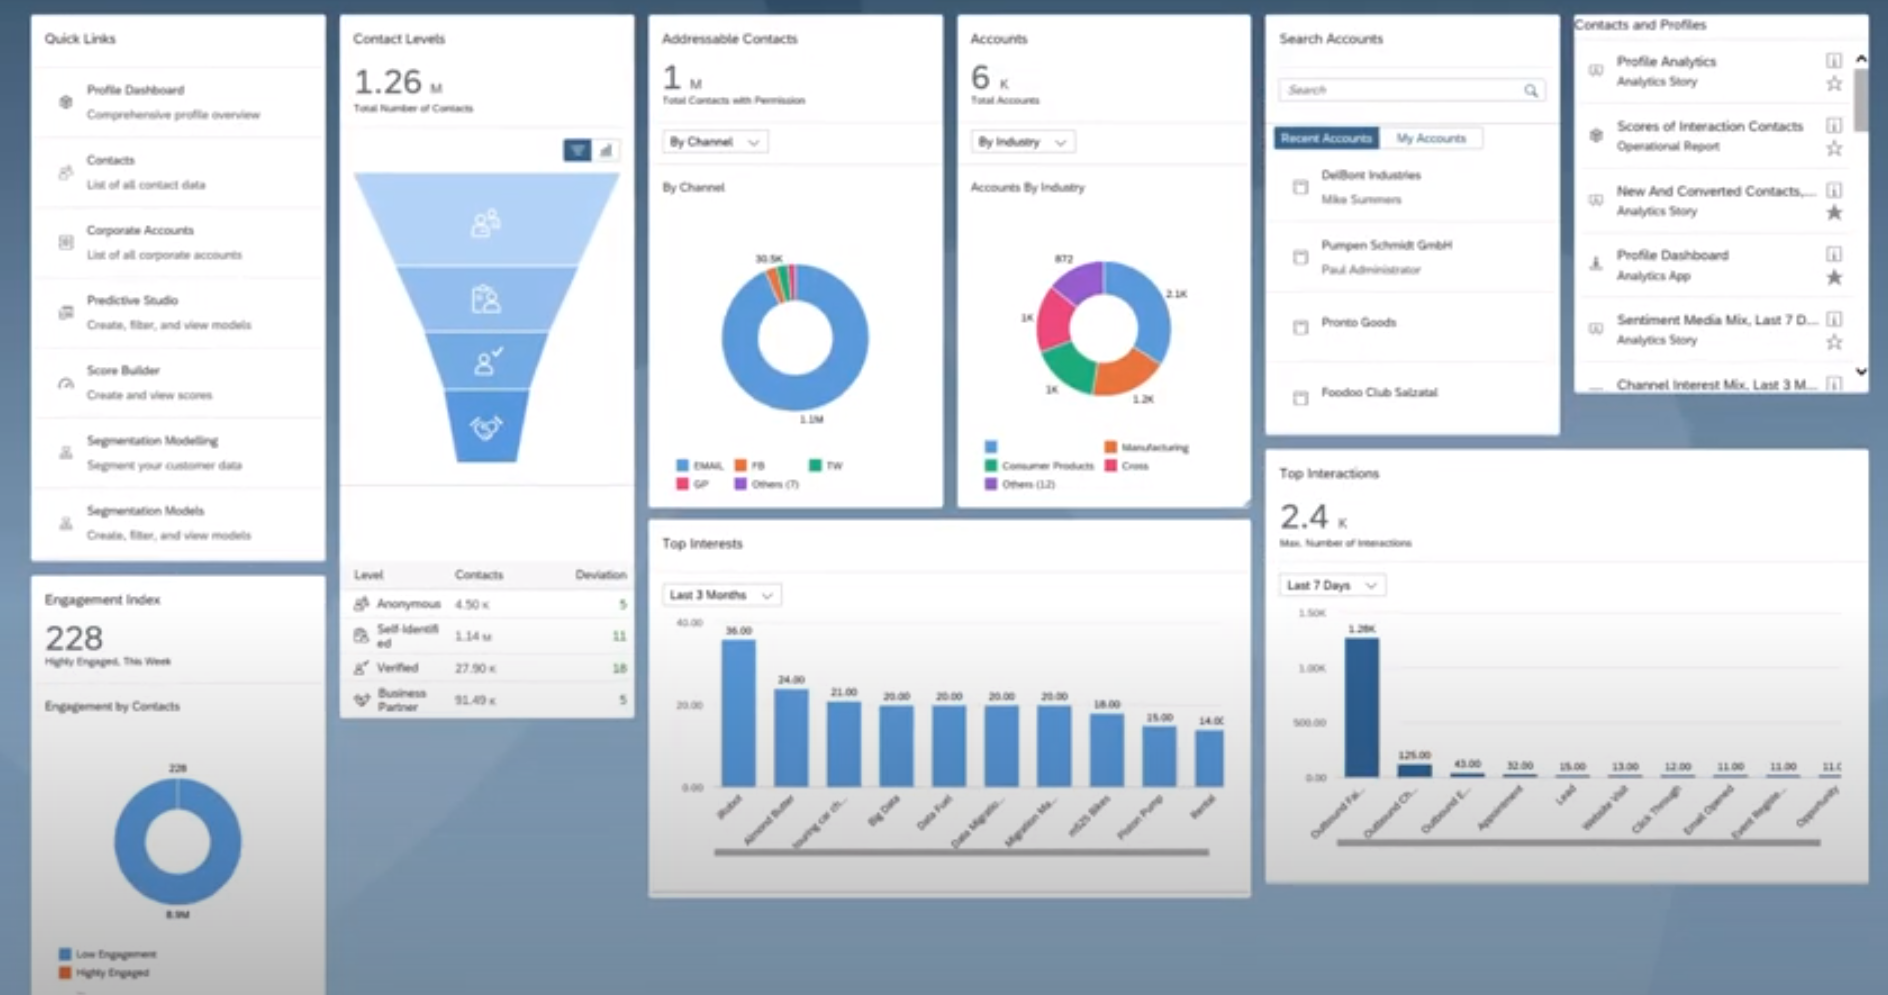 SAP Marketing Cloud main dashboard